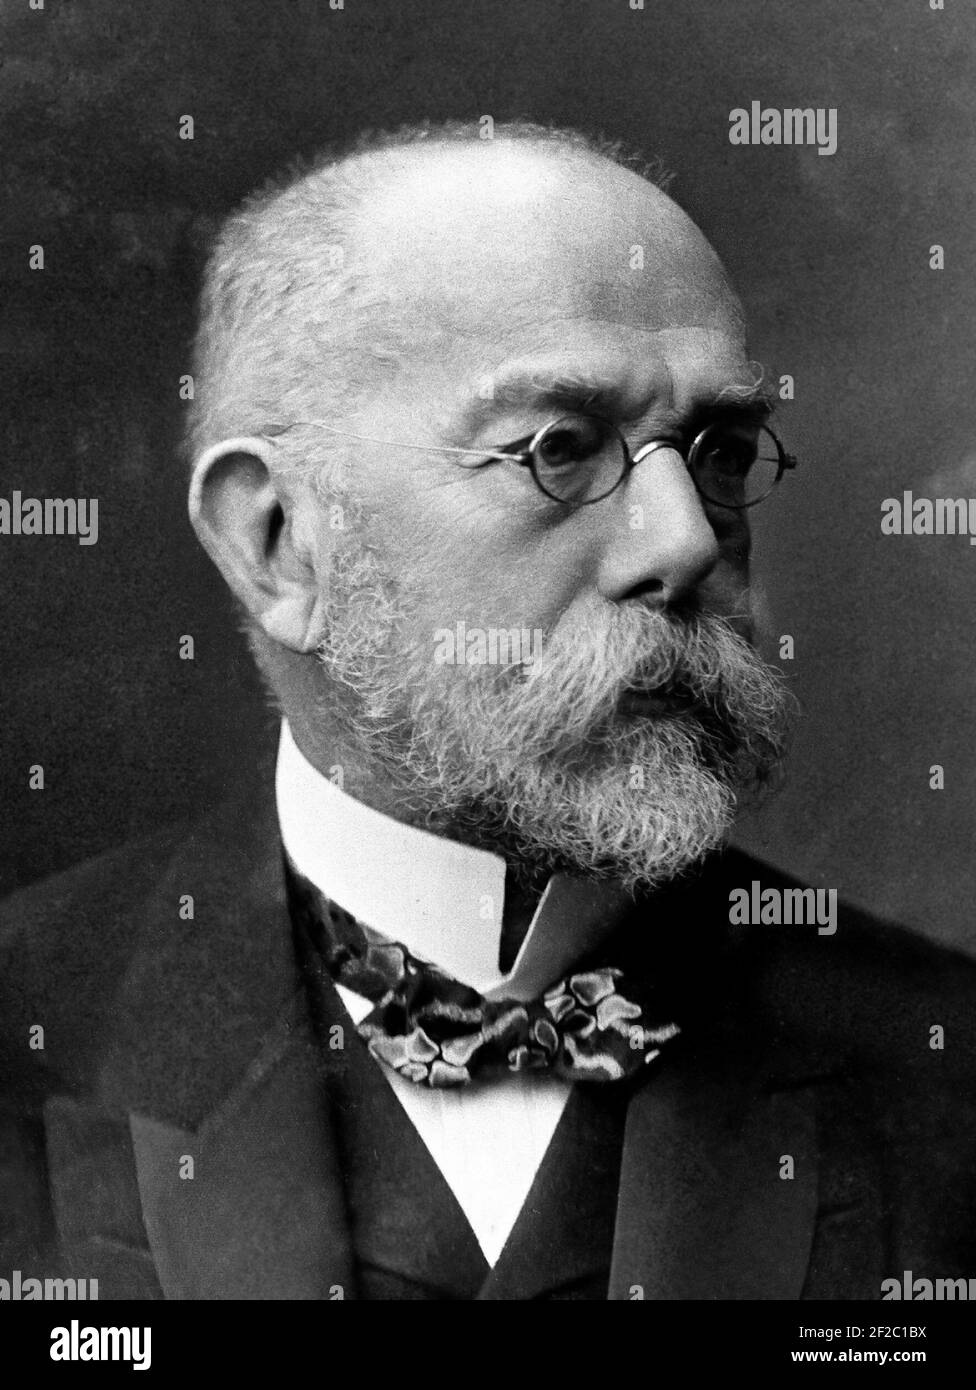 Robert Koch. Portrait du microbiologiste et médecin allemand lauréat du prix Nobel, Heinrich Hermann Robert Koch (1843-1910), 1907 Banque D'Images